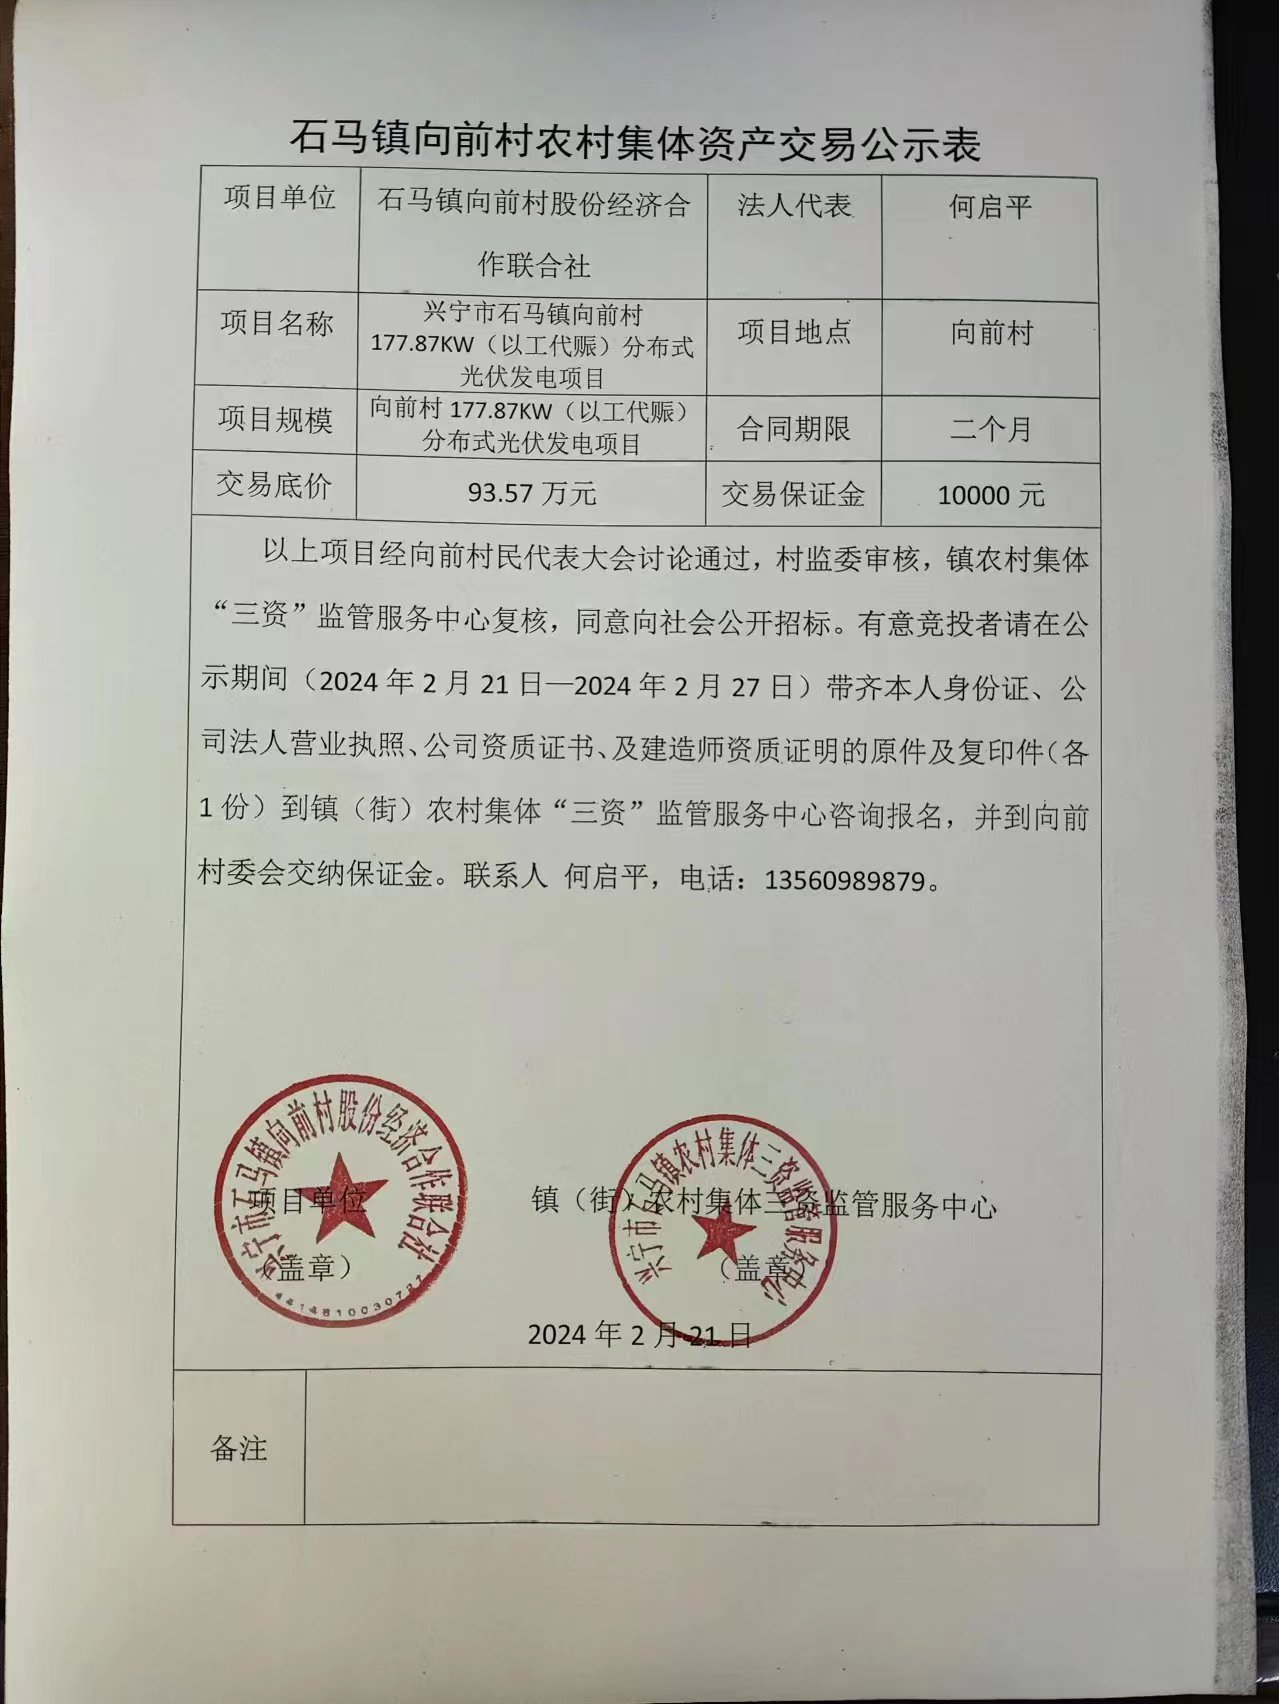 石马镇向前村农村集体资产交易公示表2024.2.21.jpg